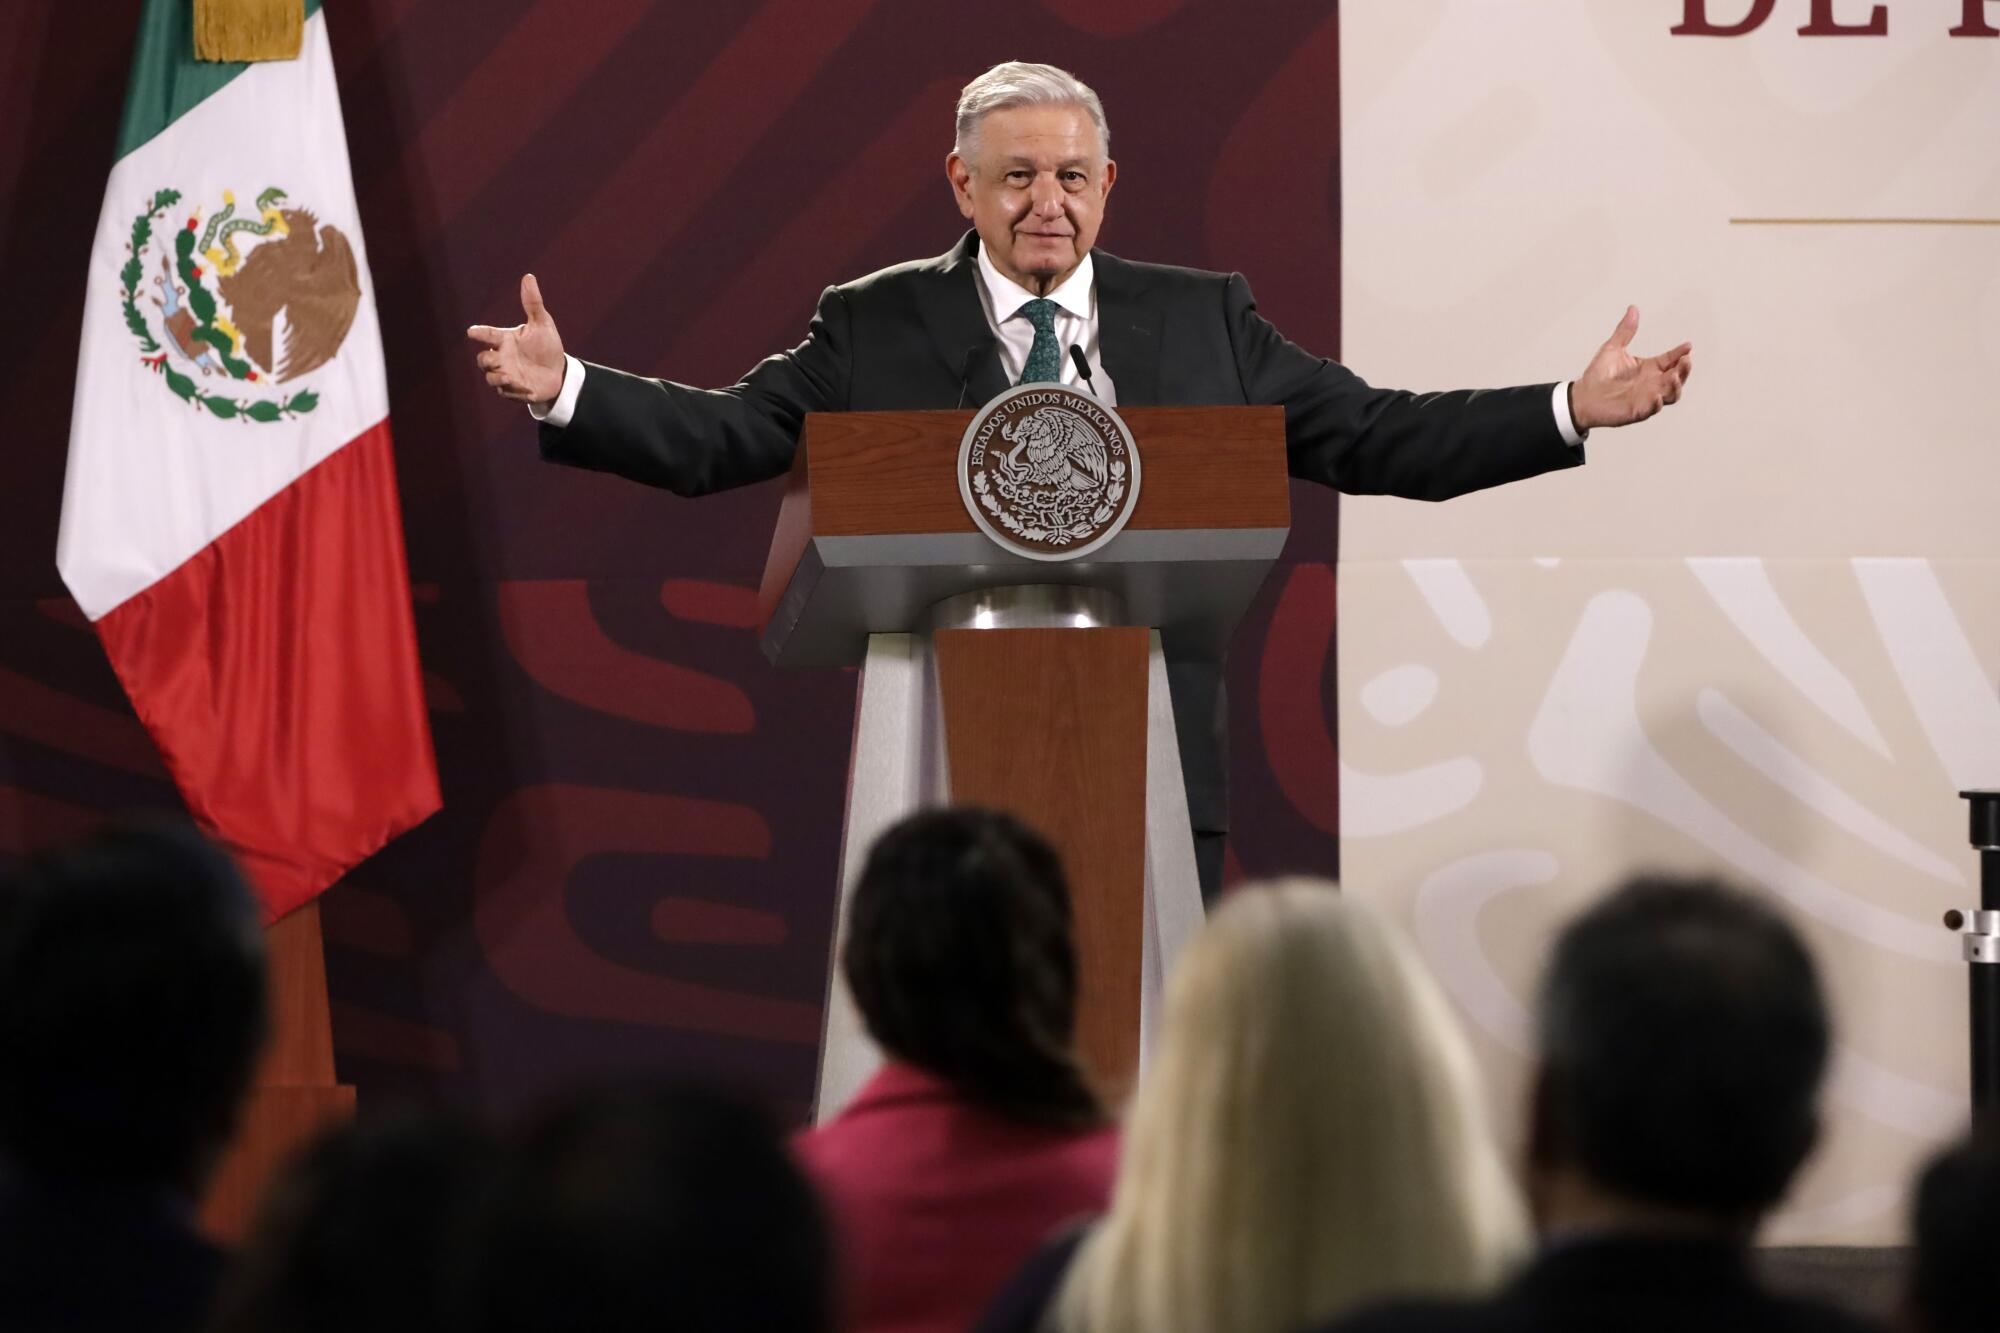 墨西哥总统安德烈斯·曼努埃尔·洛佩斯·奥夫拉多尔在每日新闻发布会上举起手臂。